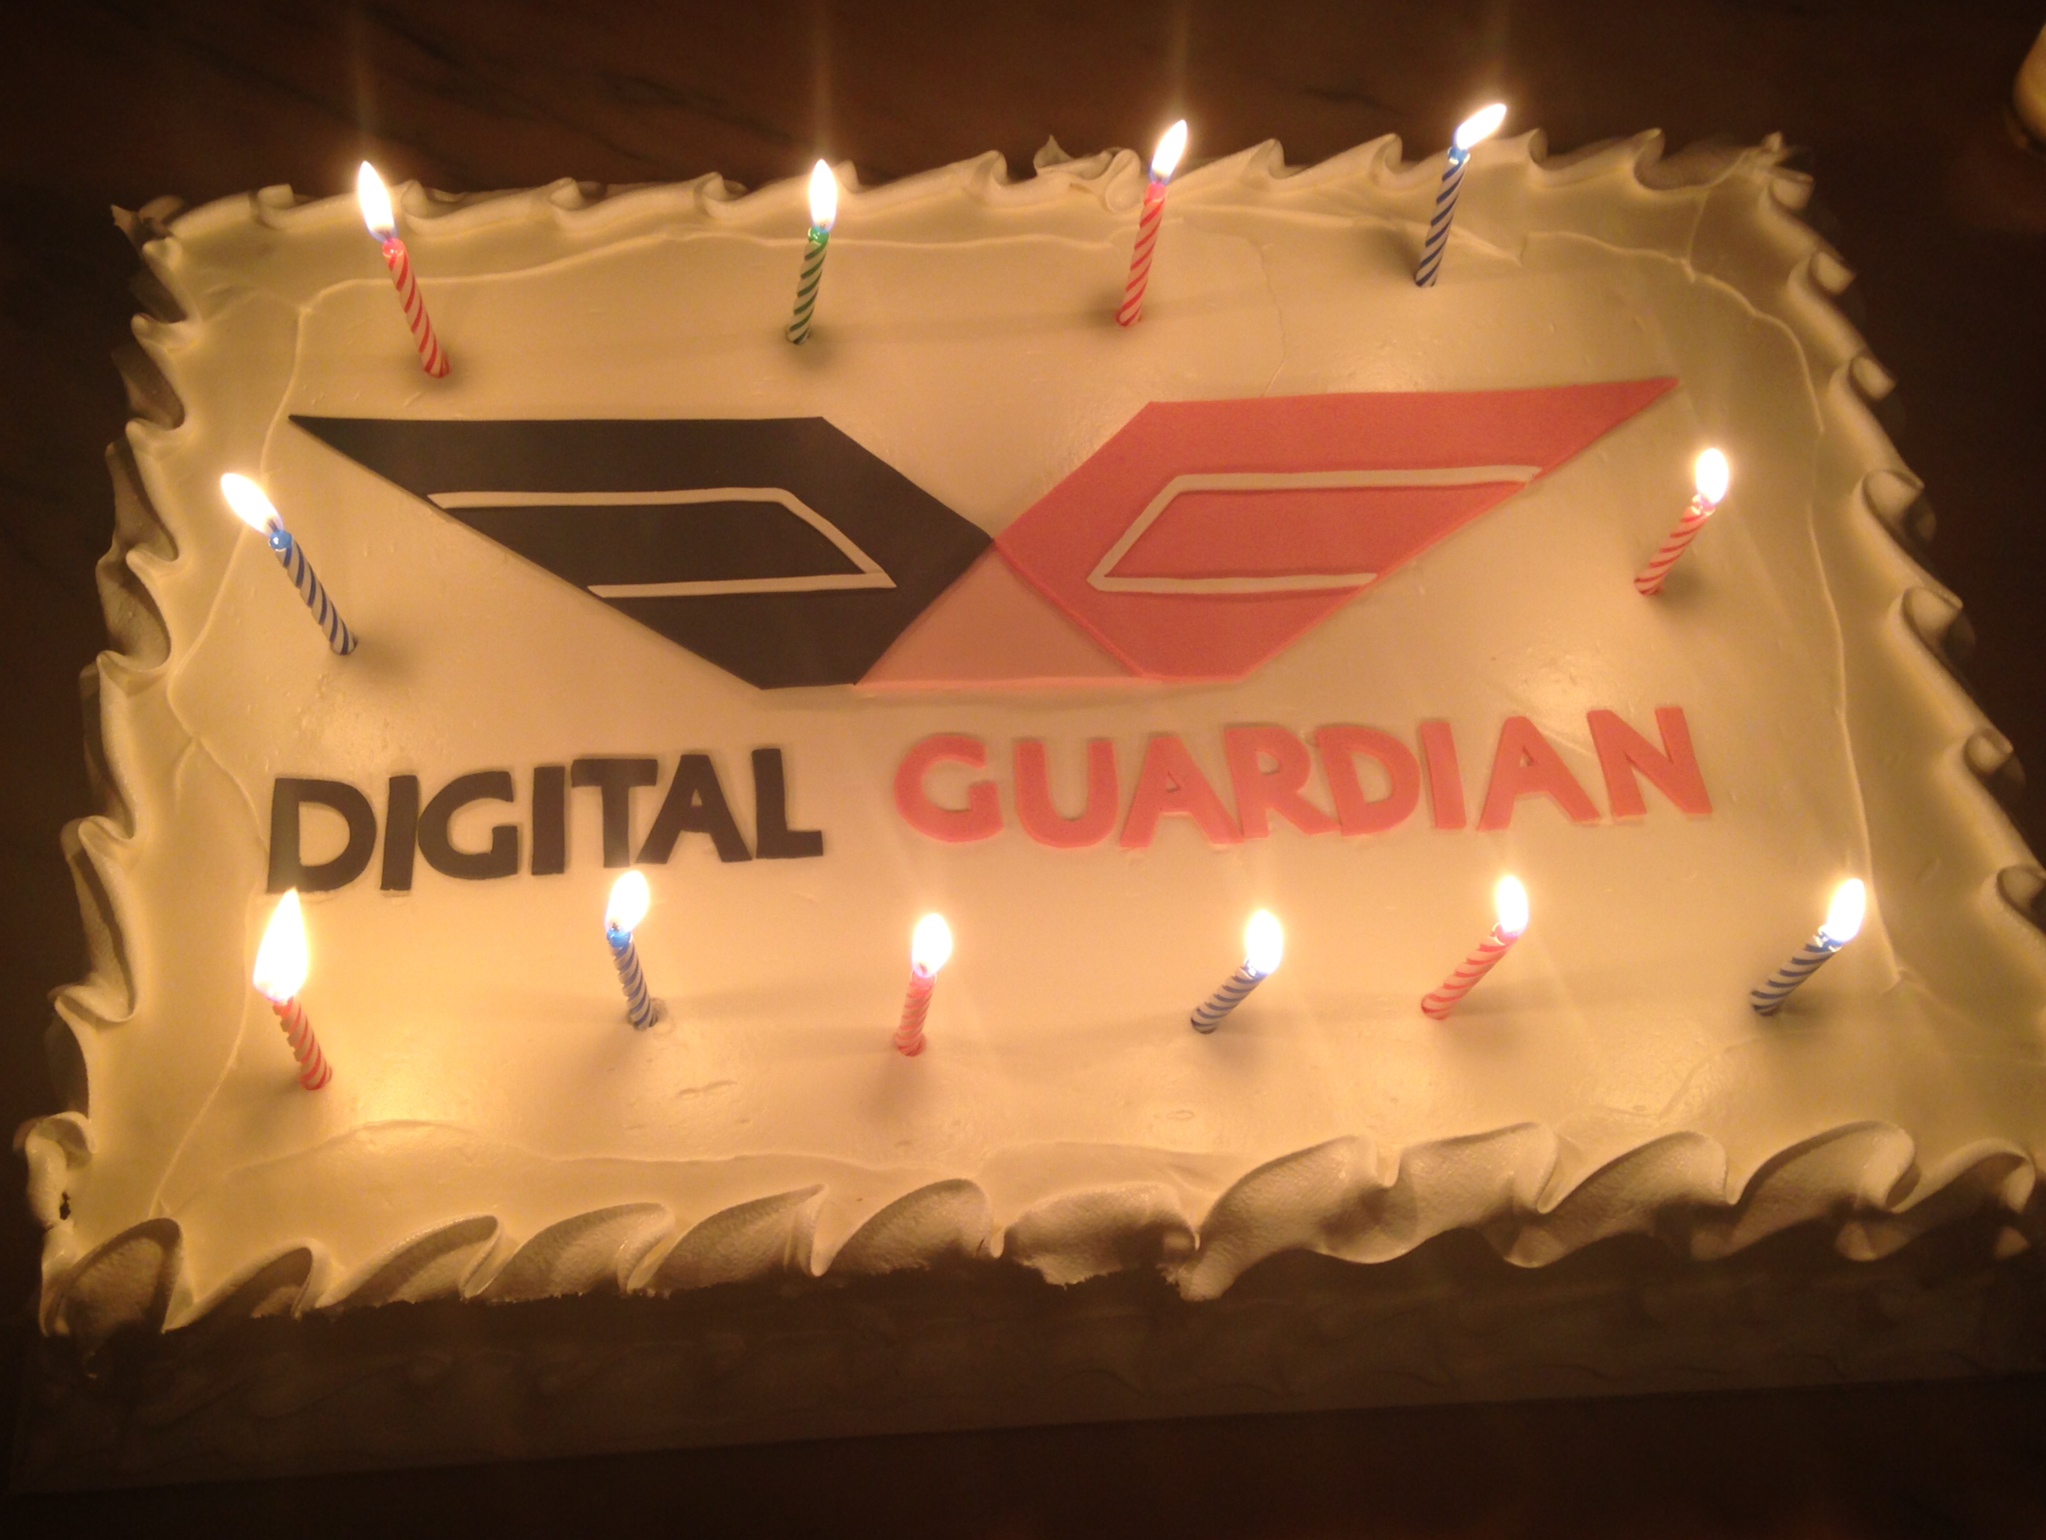 Digital Guardian Cake